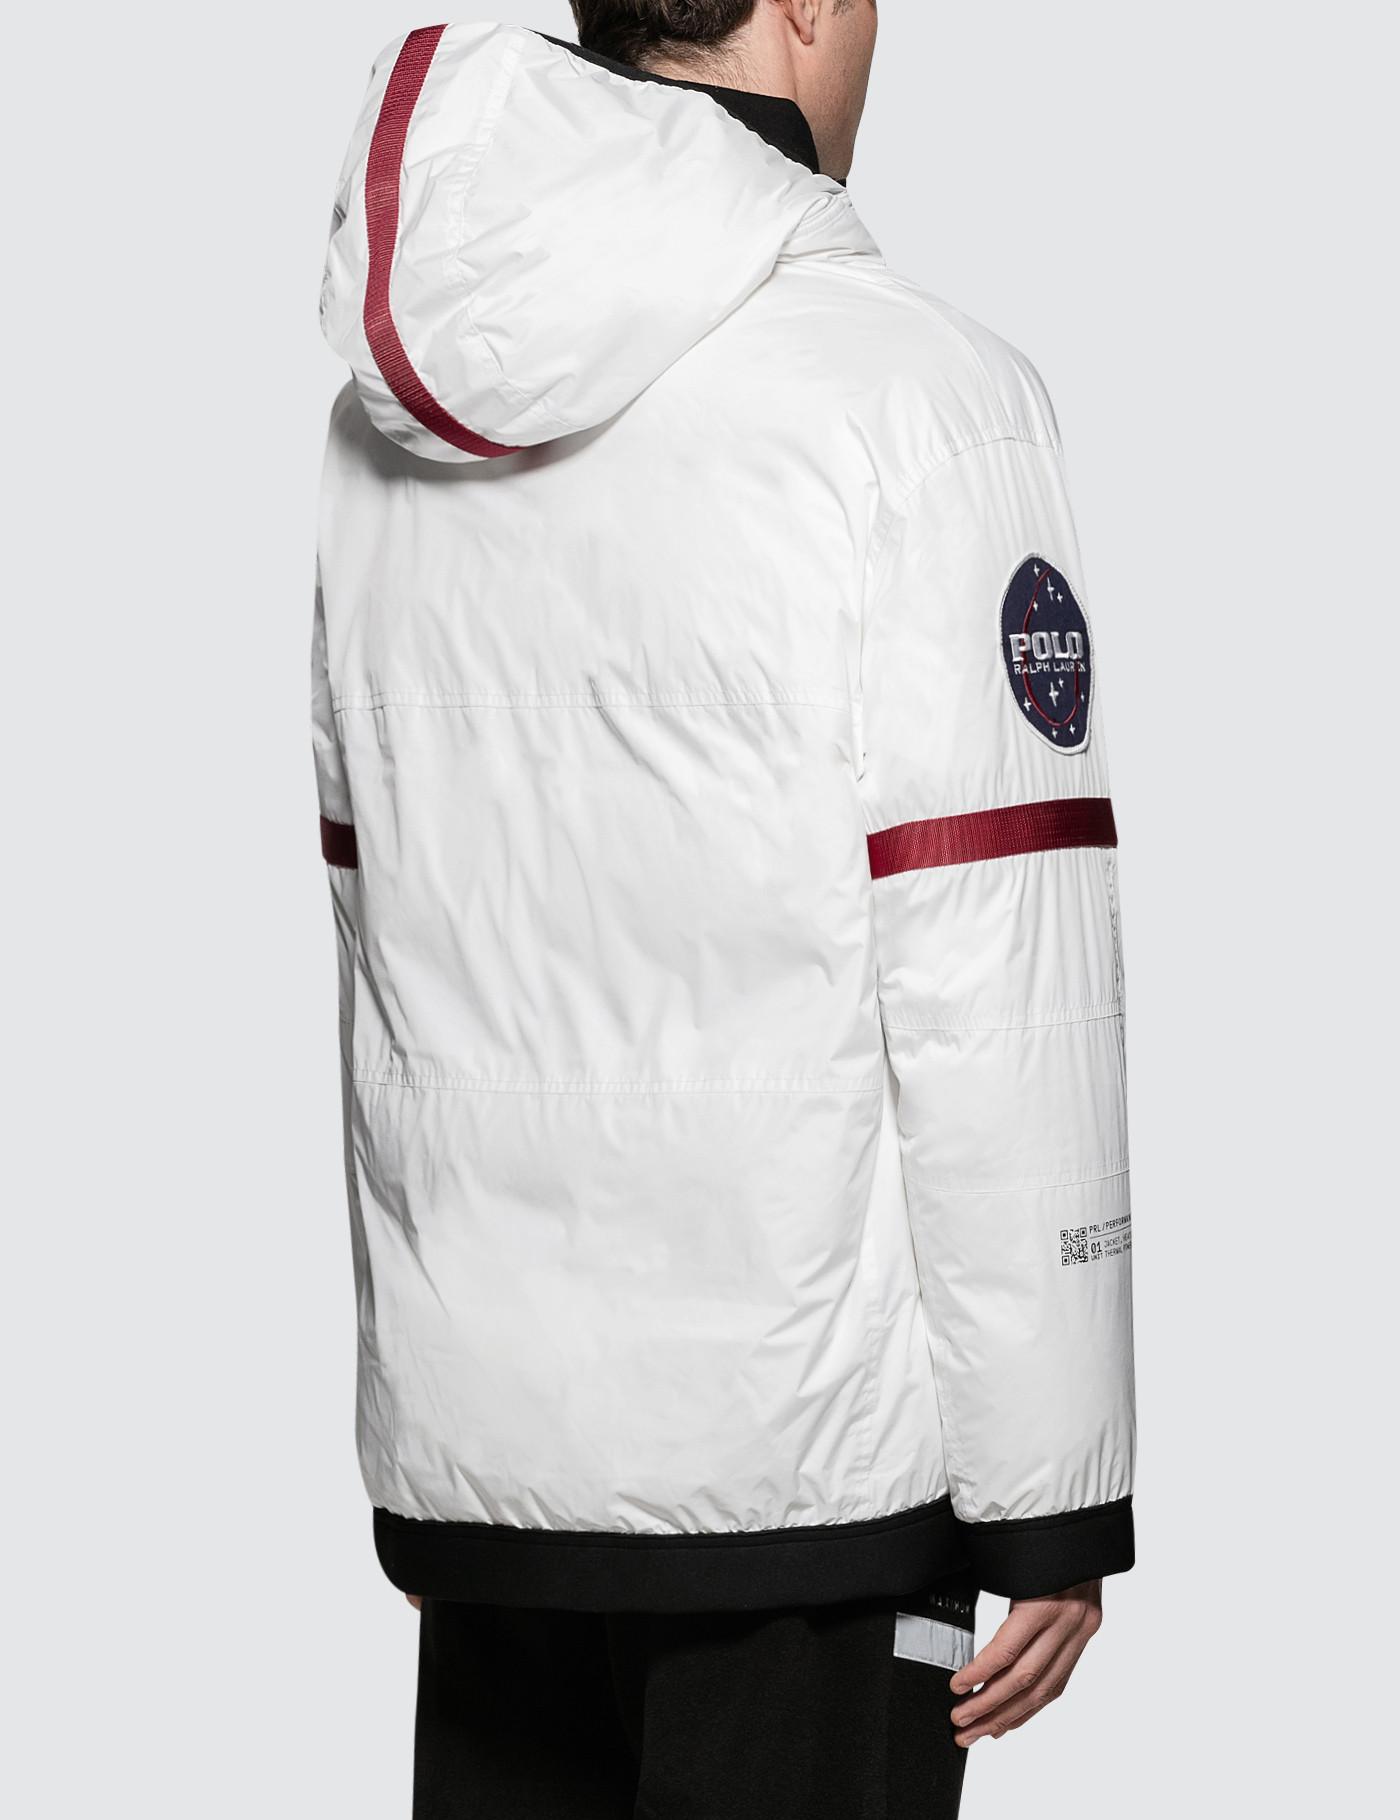 Ralph Lauren Neoprene Polo 11 Heated Jacket in White for Men - Lyst